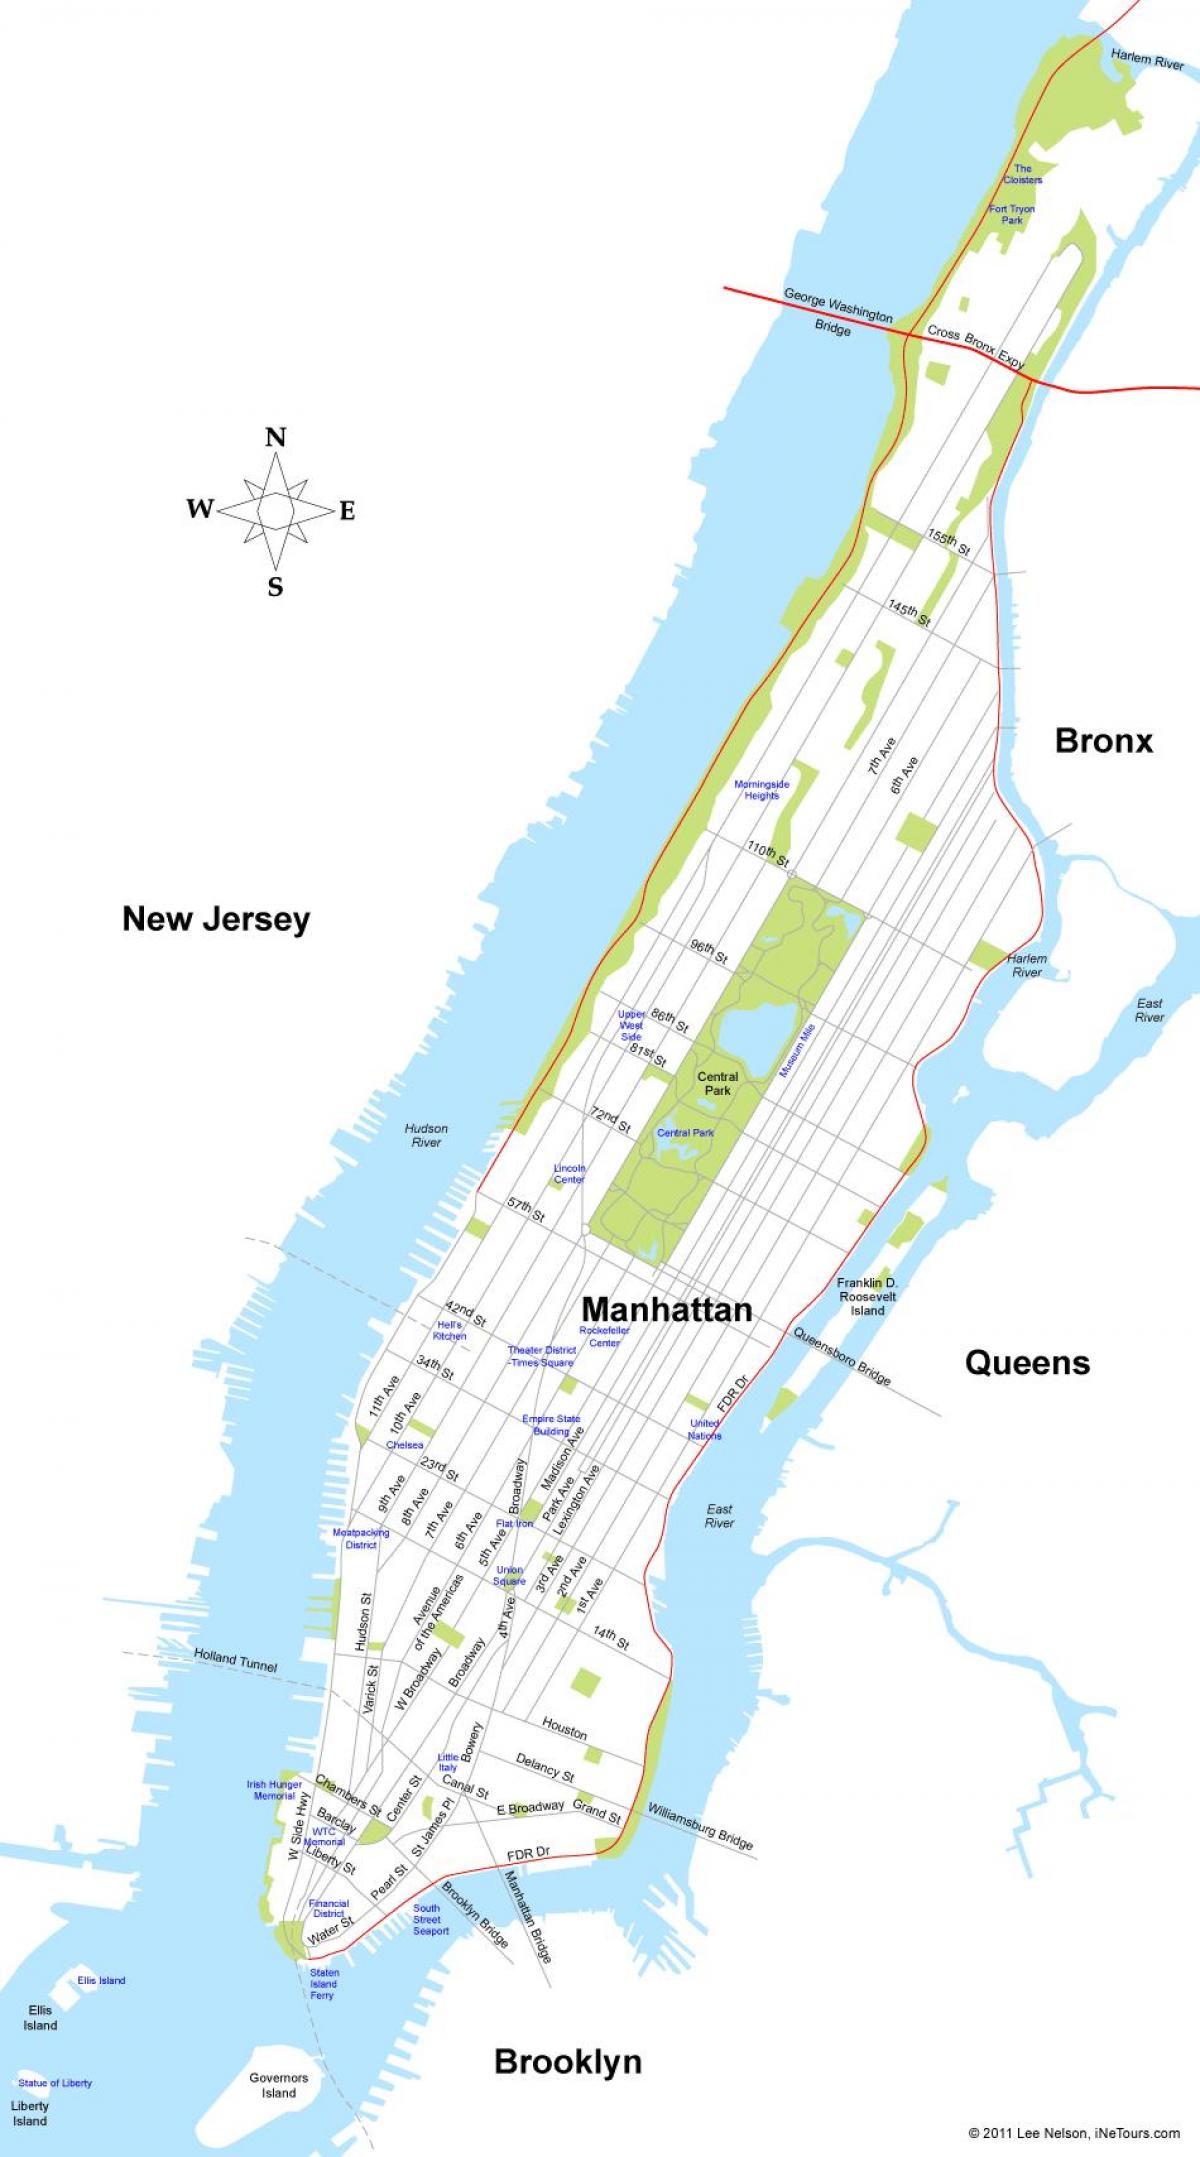 χάρτη το νησί του Μανχάταν στη Νέα Υόρκη